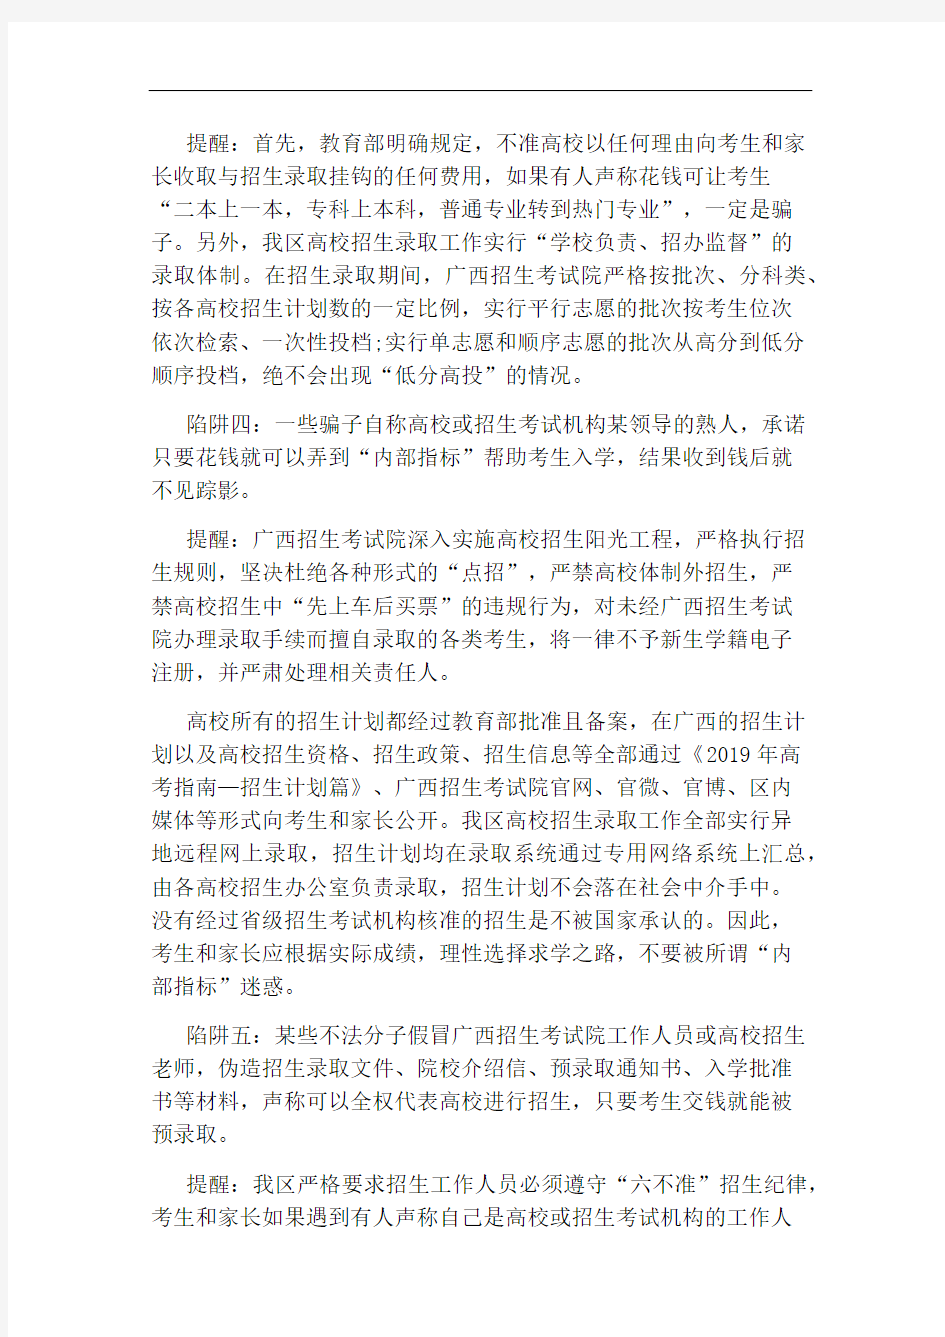 广西招生考试院发布防范招生诈骗预警信息